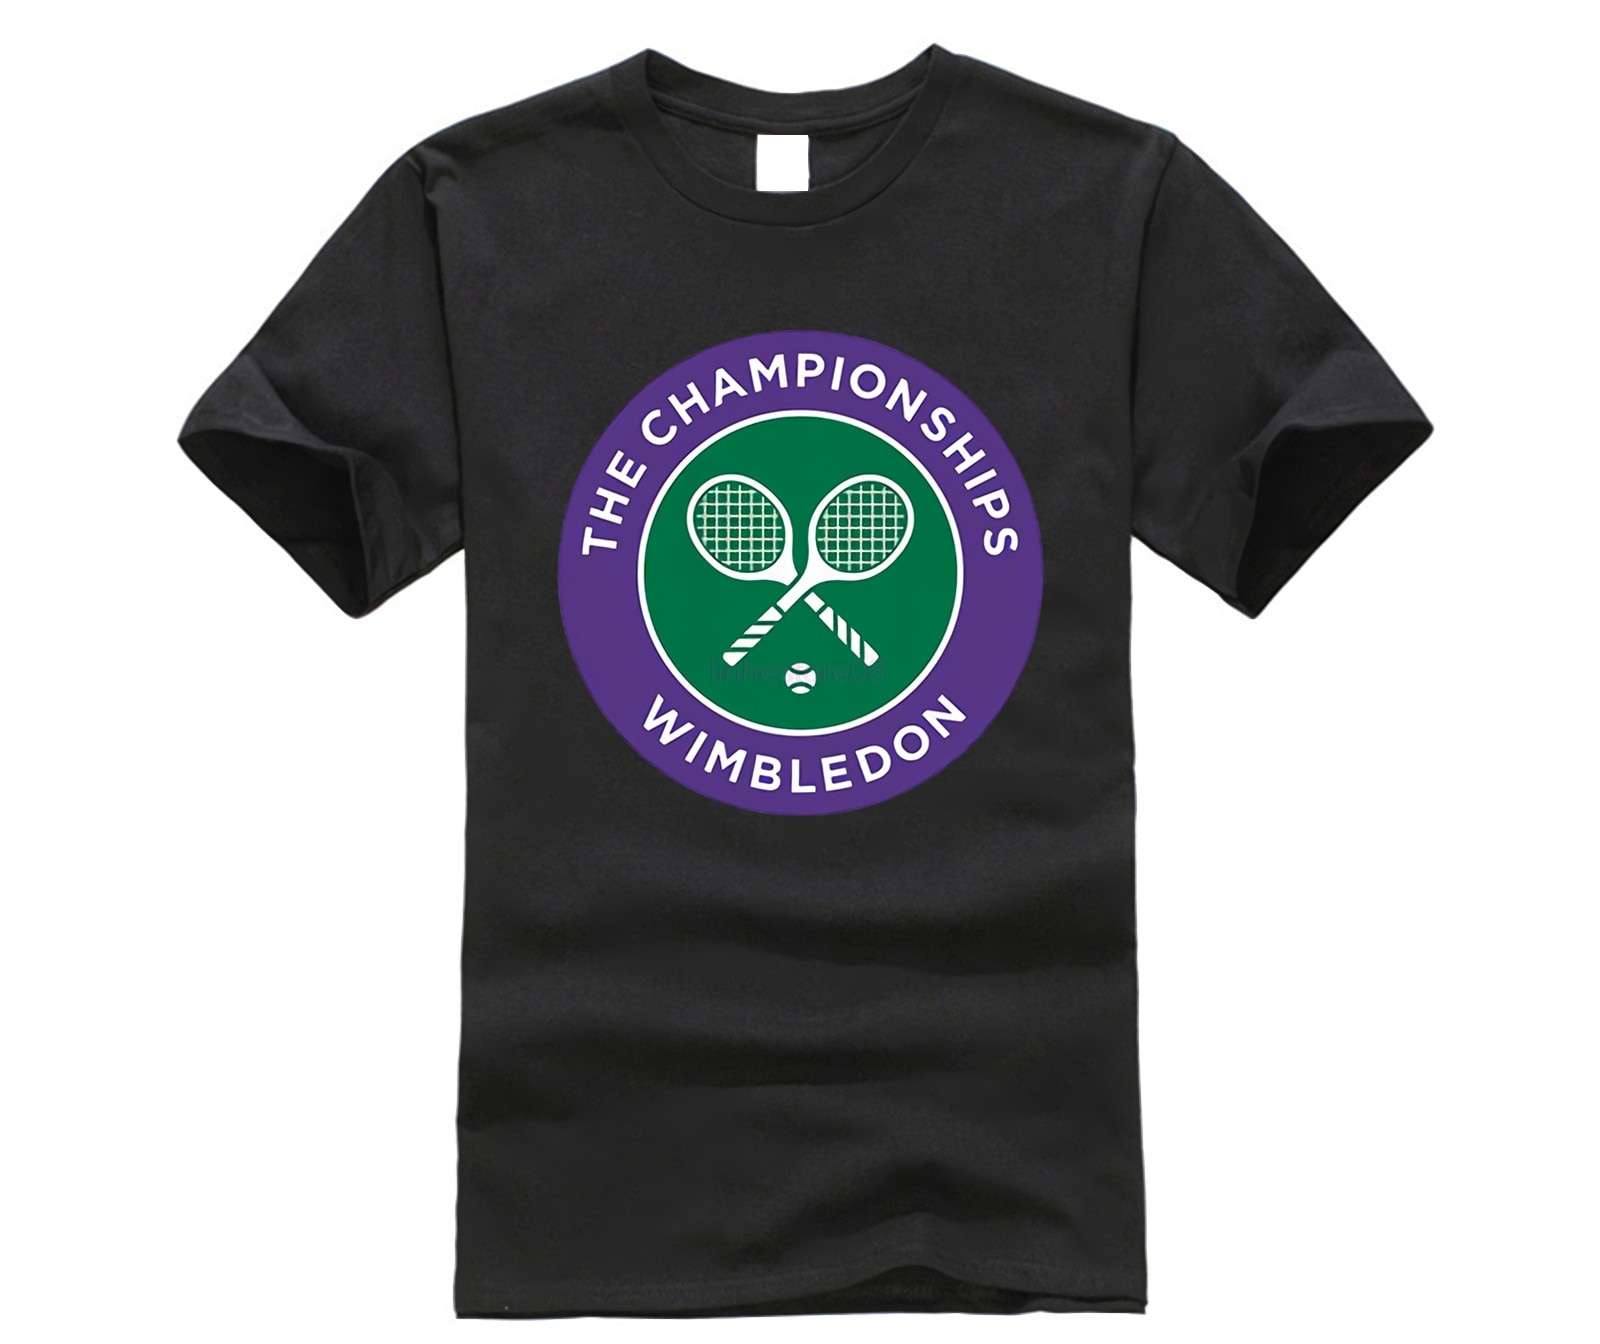 Wimbledon Grand Slam Tt shirt Top Lycra Cotton Men T shirt New Design High Quality Digital